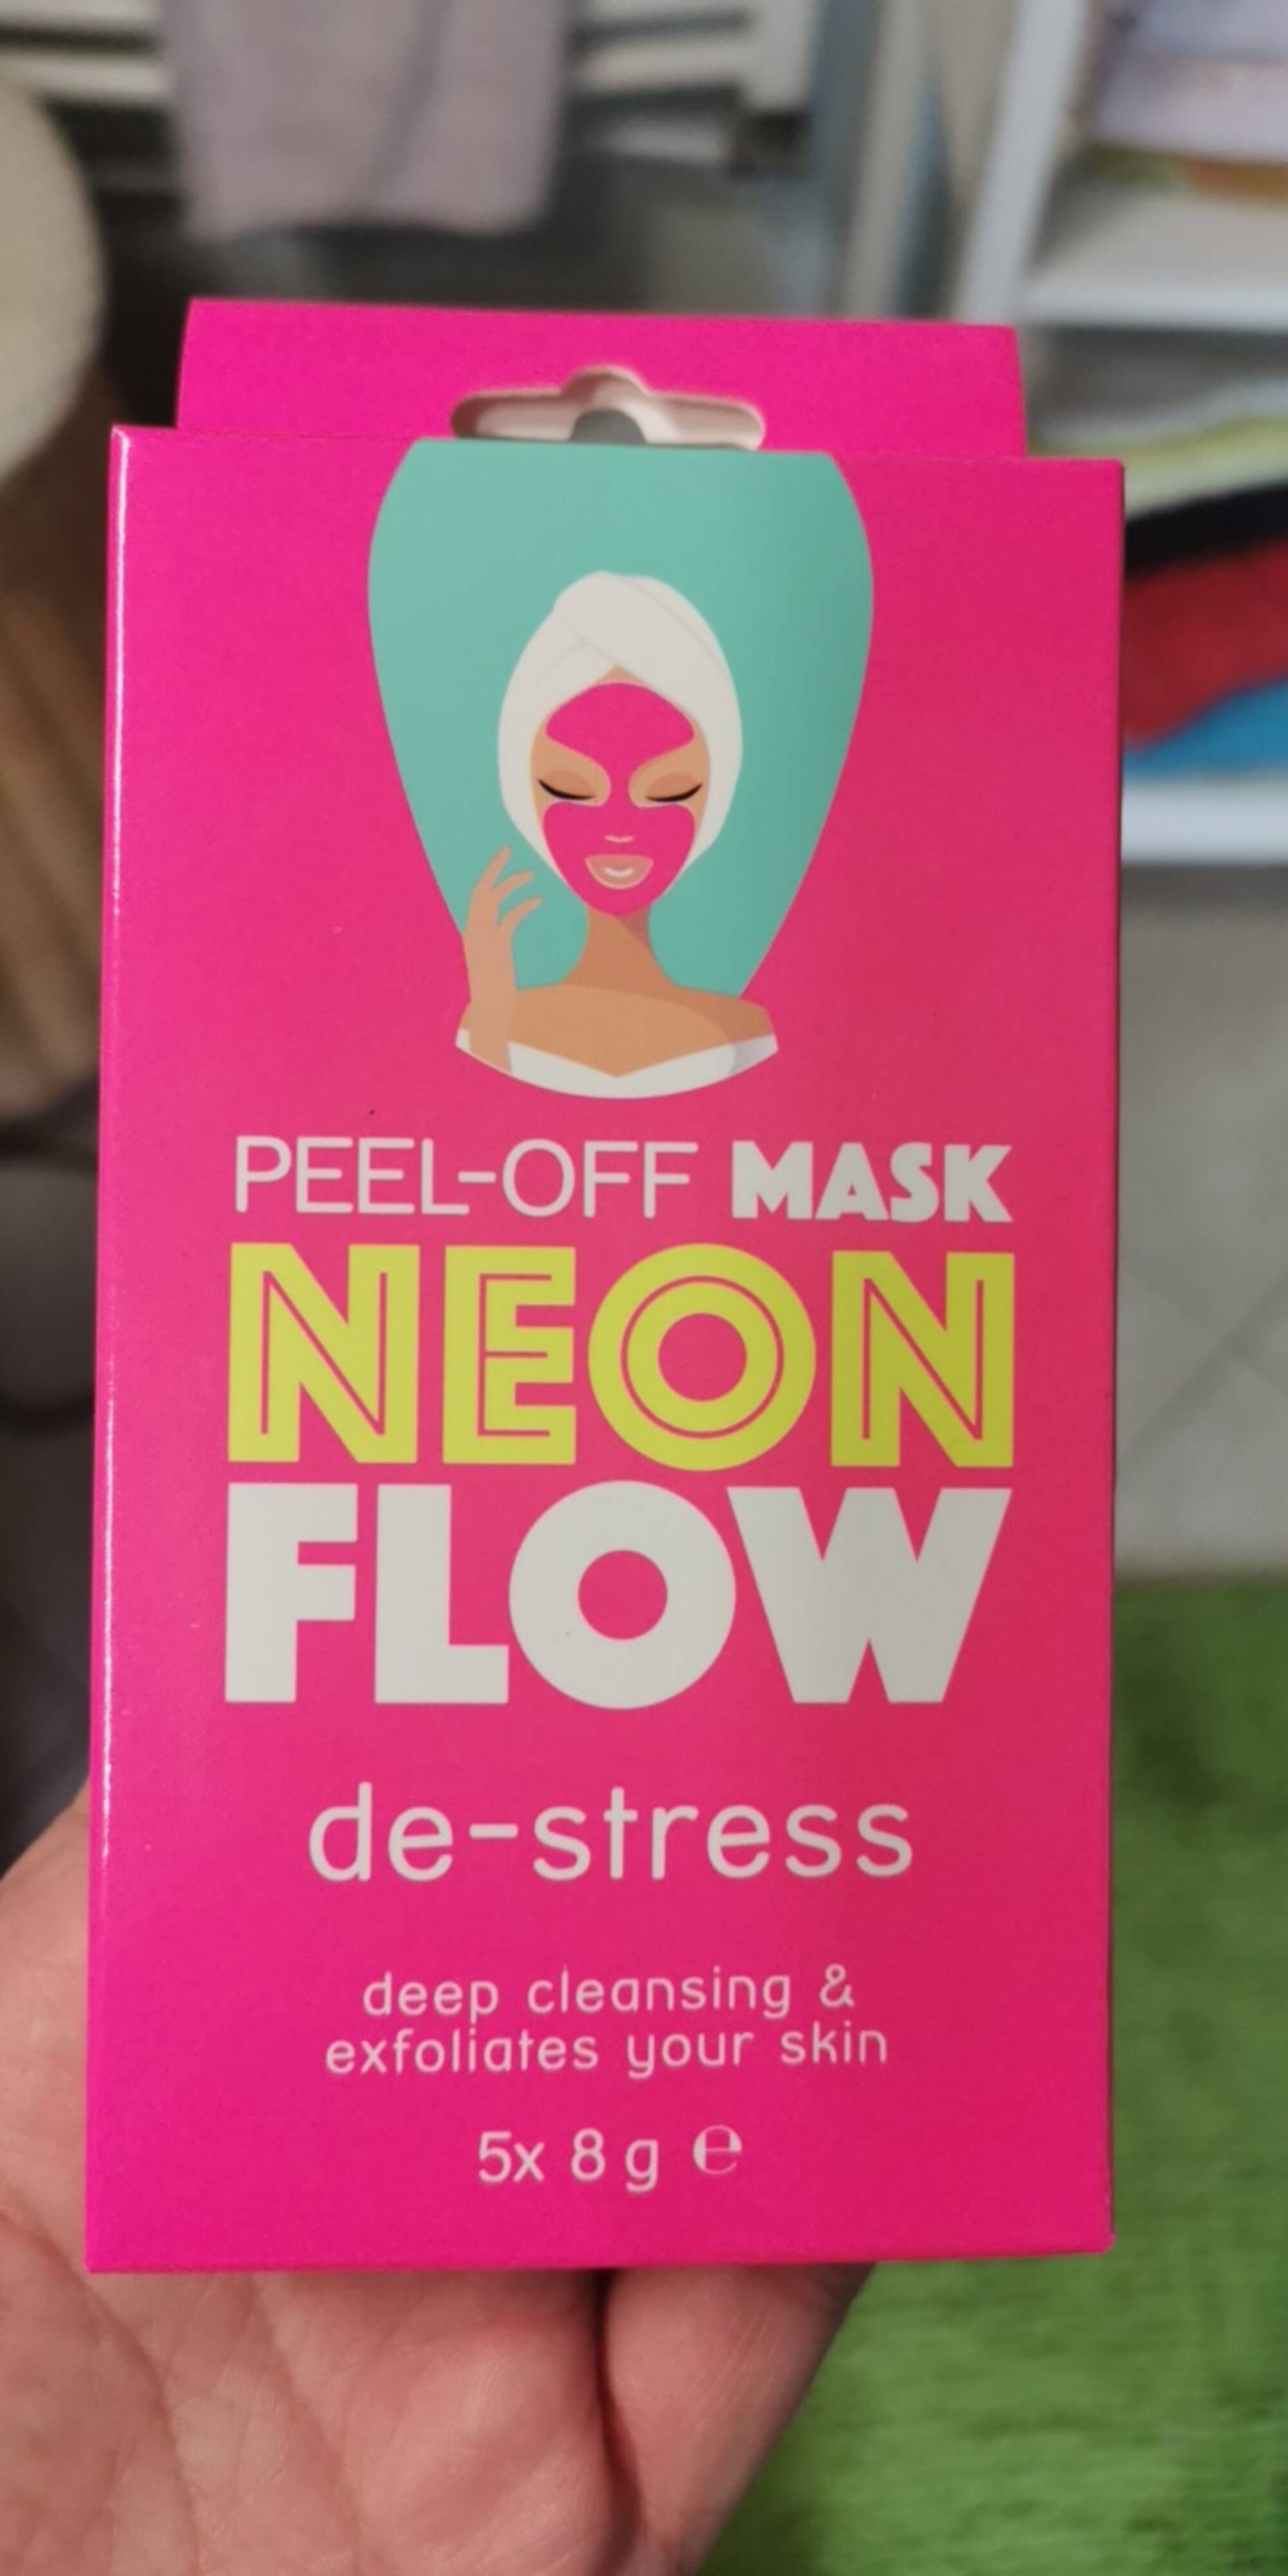 NEON FLOW - De-stress - Peel-off mask